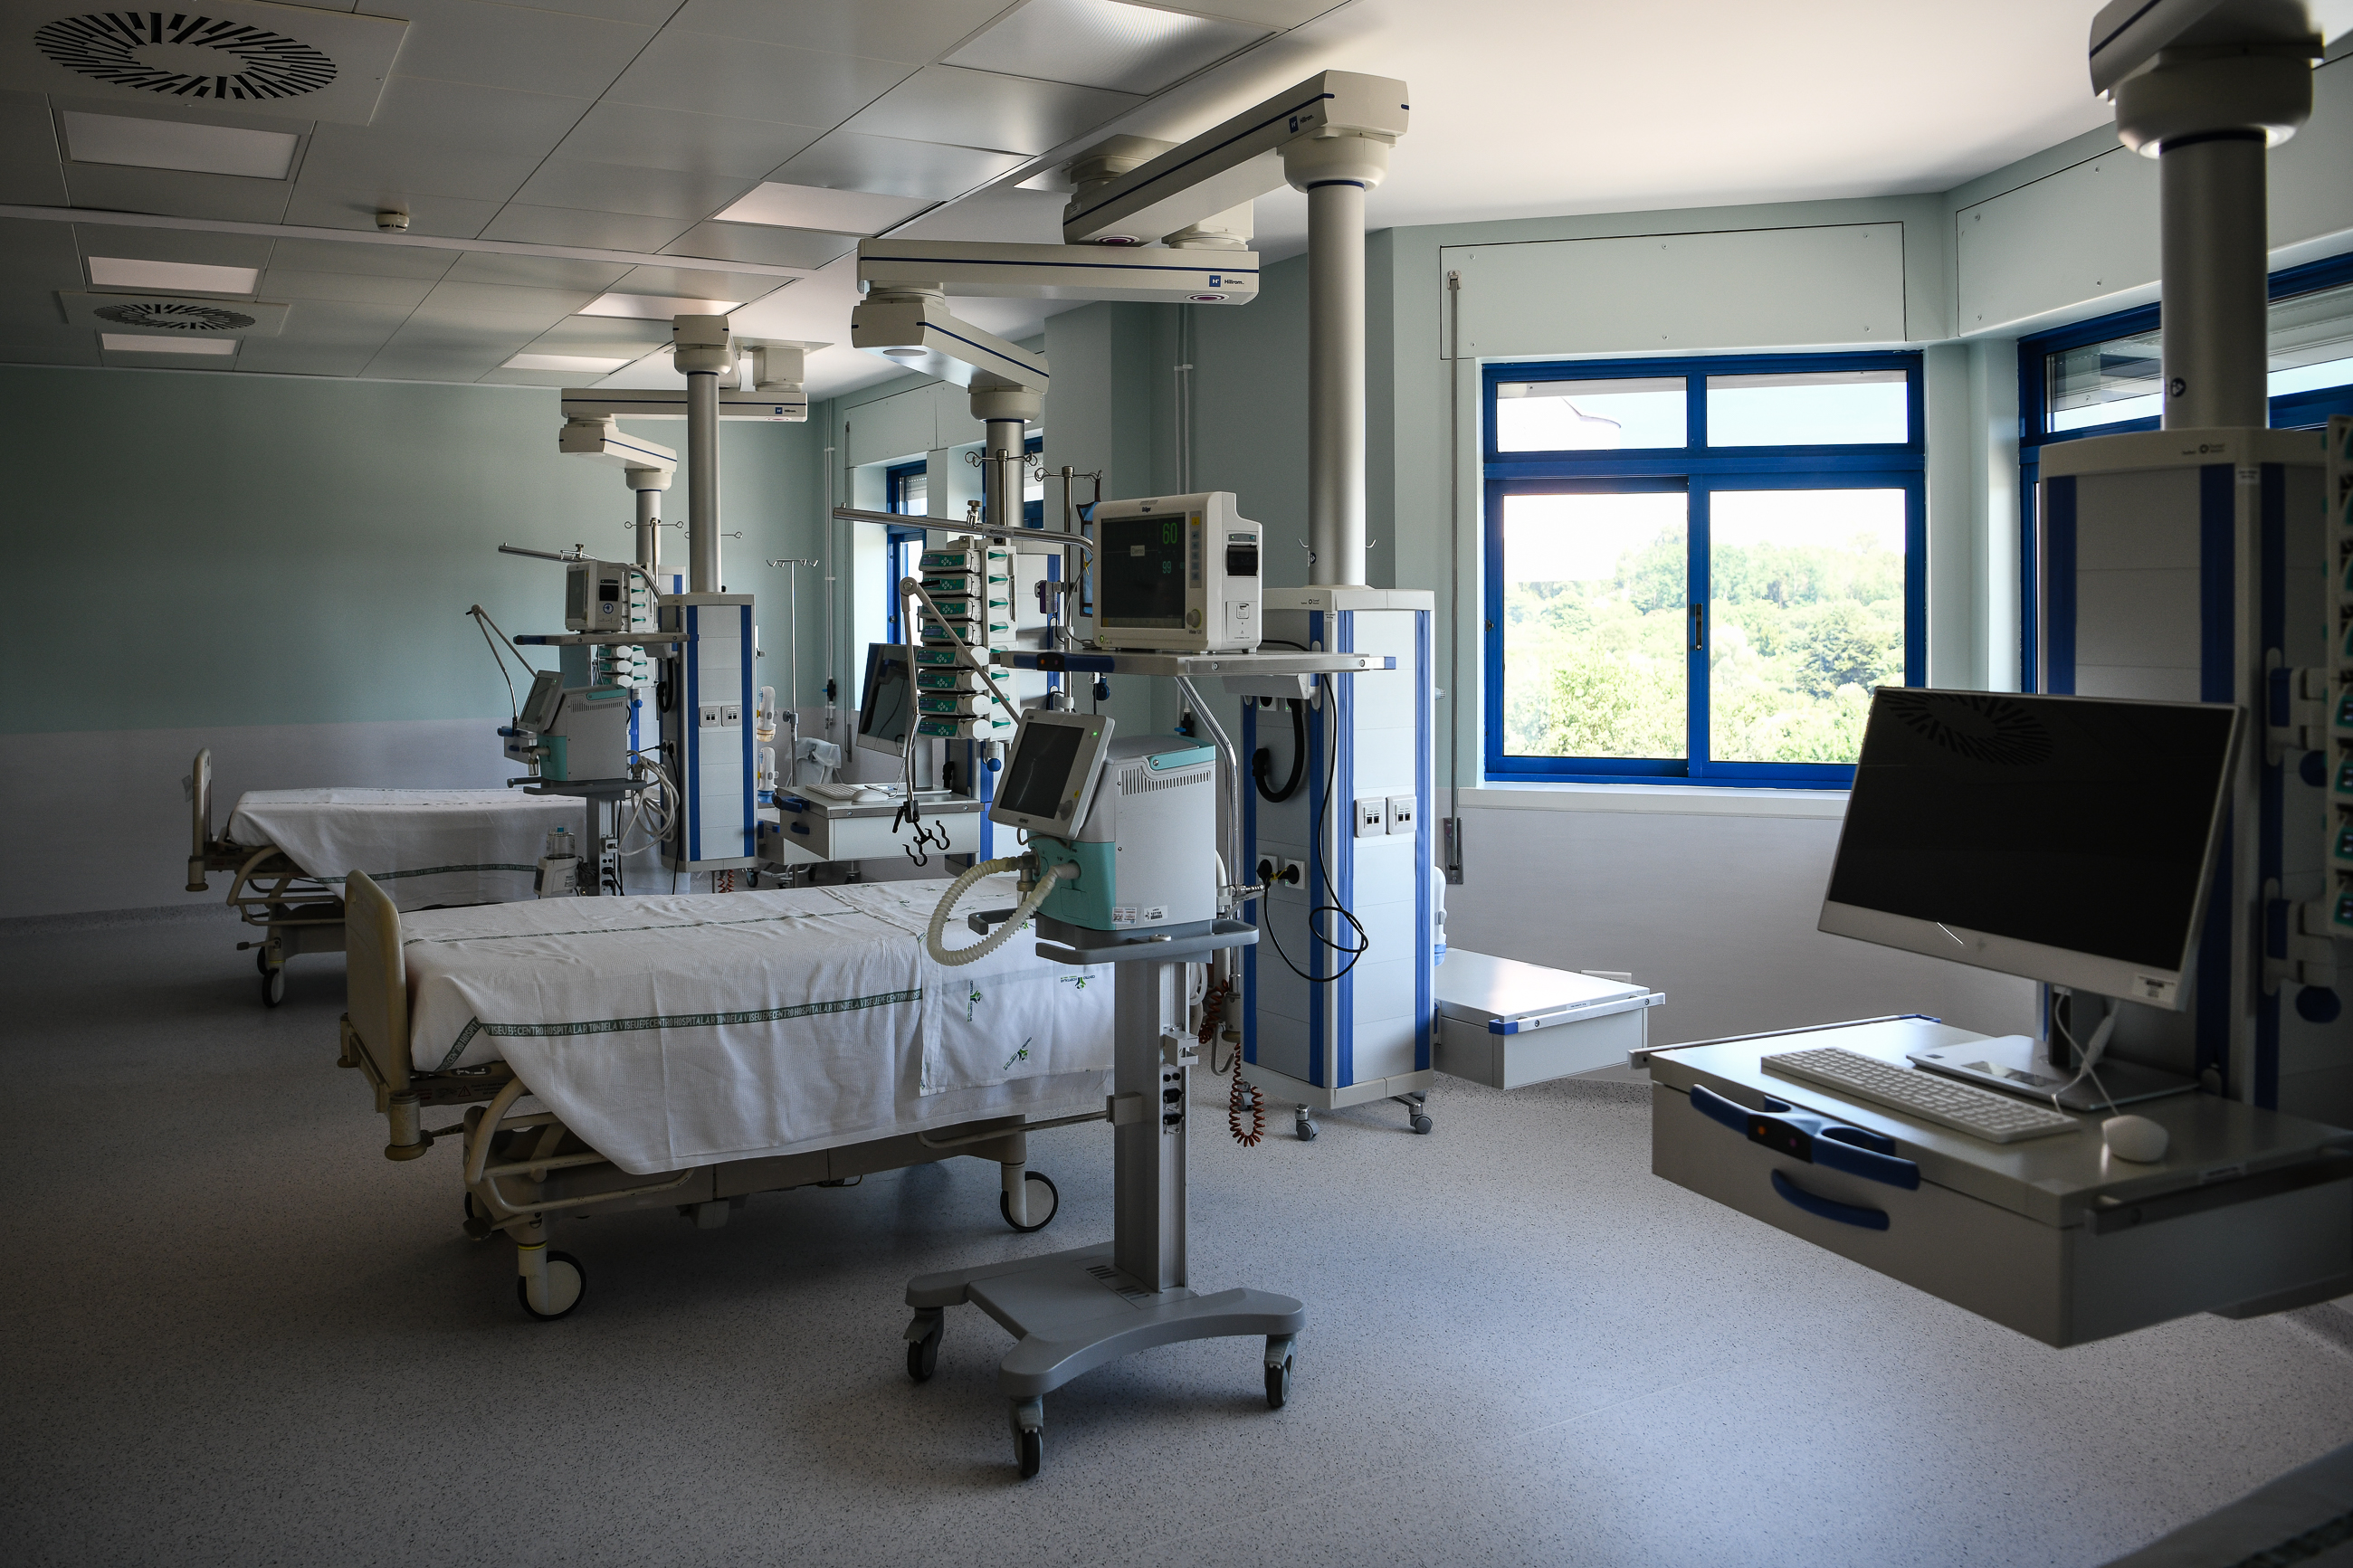 Novas instalações dos cuidados intensivos do hospital de viseu